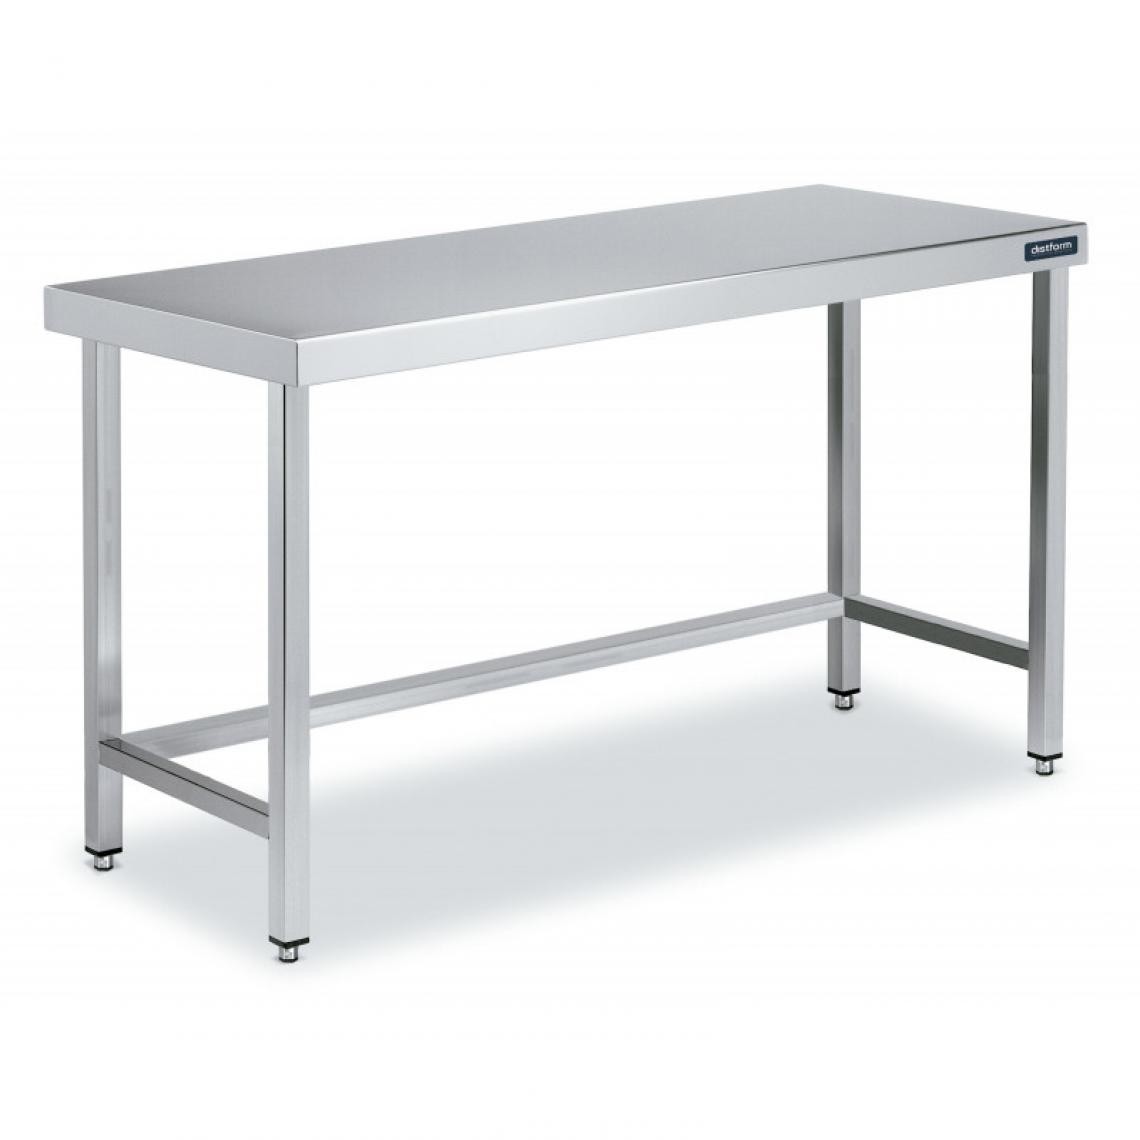 DISTFORM - Table Inox de Travail Centrale avec Renforts - Gamme 550 - Distform - Acier inoxydable1400x550 - Tables à manger